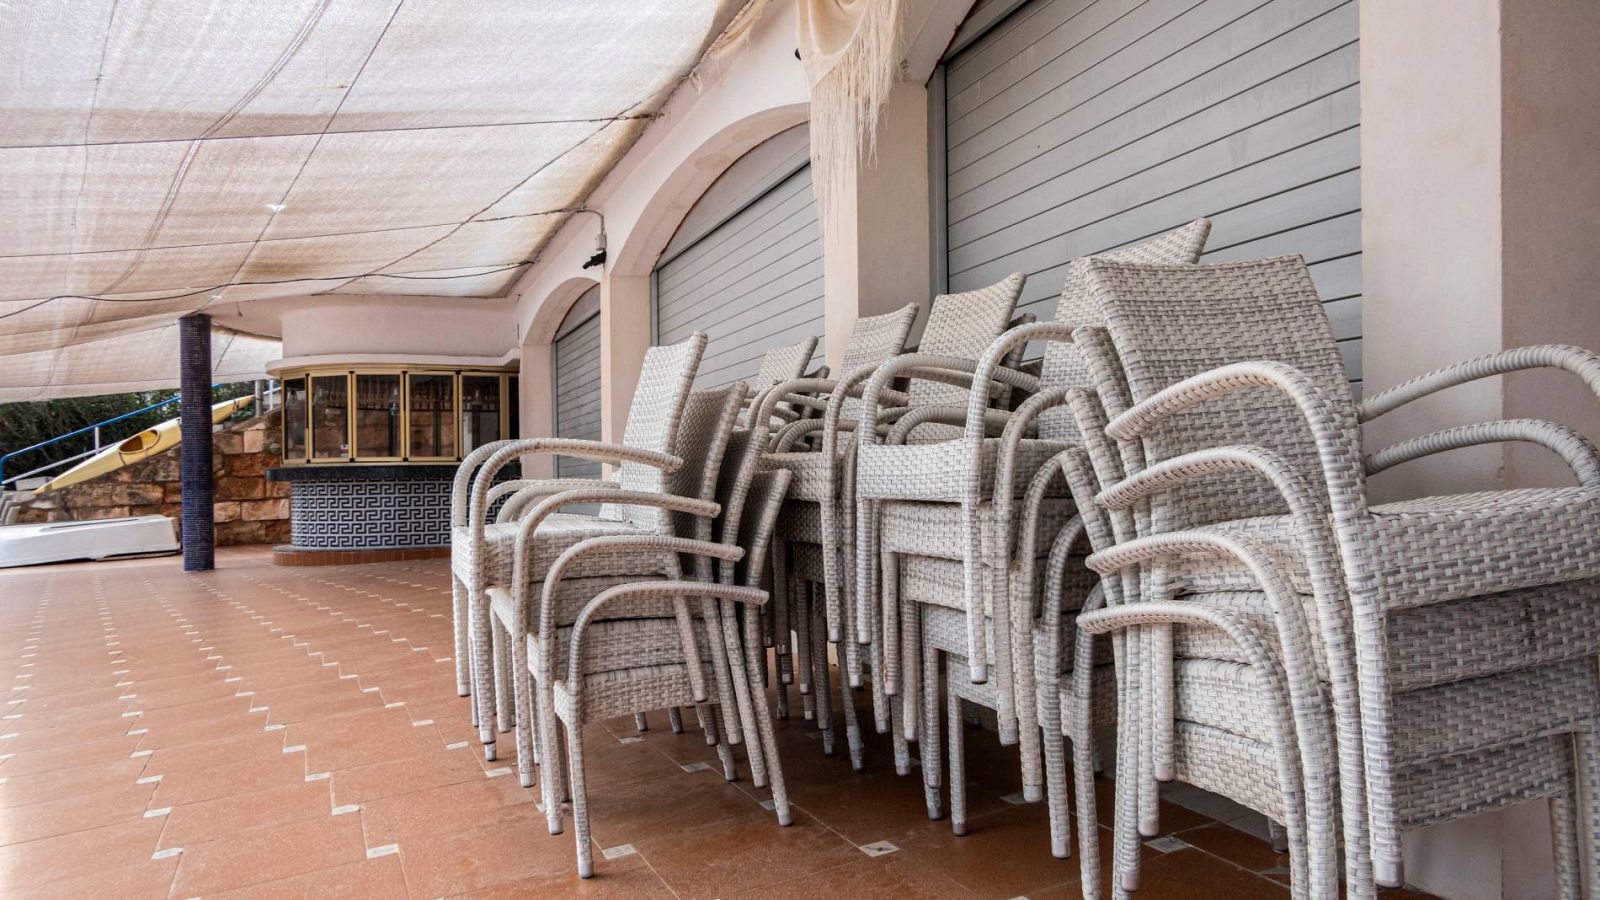 Vista de un restaurante cerrado en Cala Mandia, Mallorca, debido a las medidas de confinamiento decretadas para frenar la expansión del coronavirus